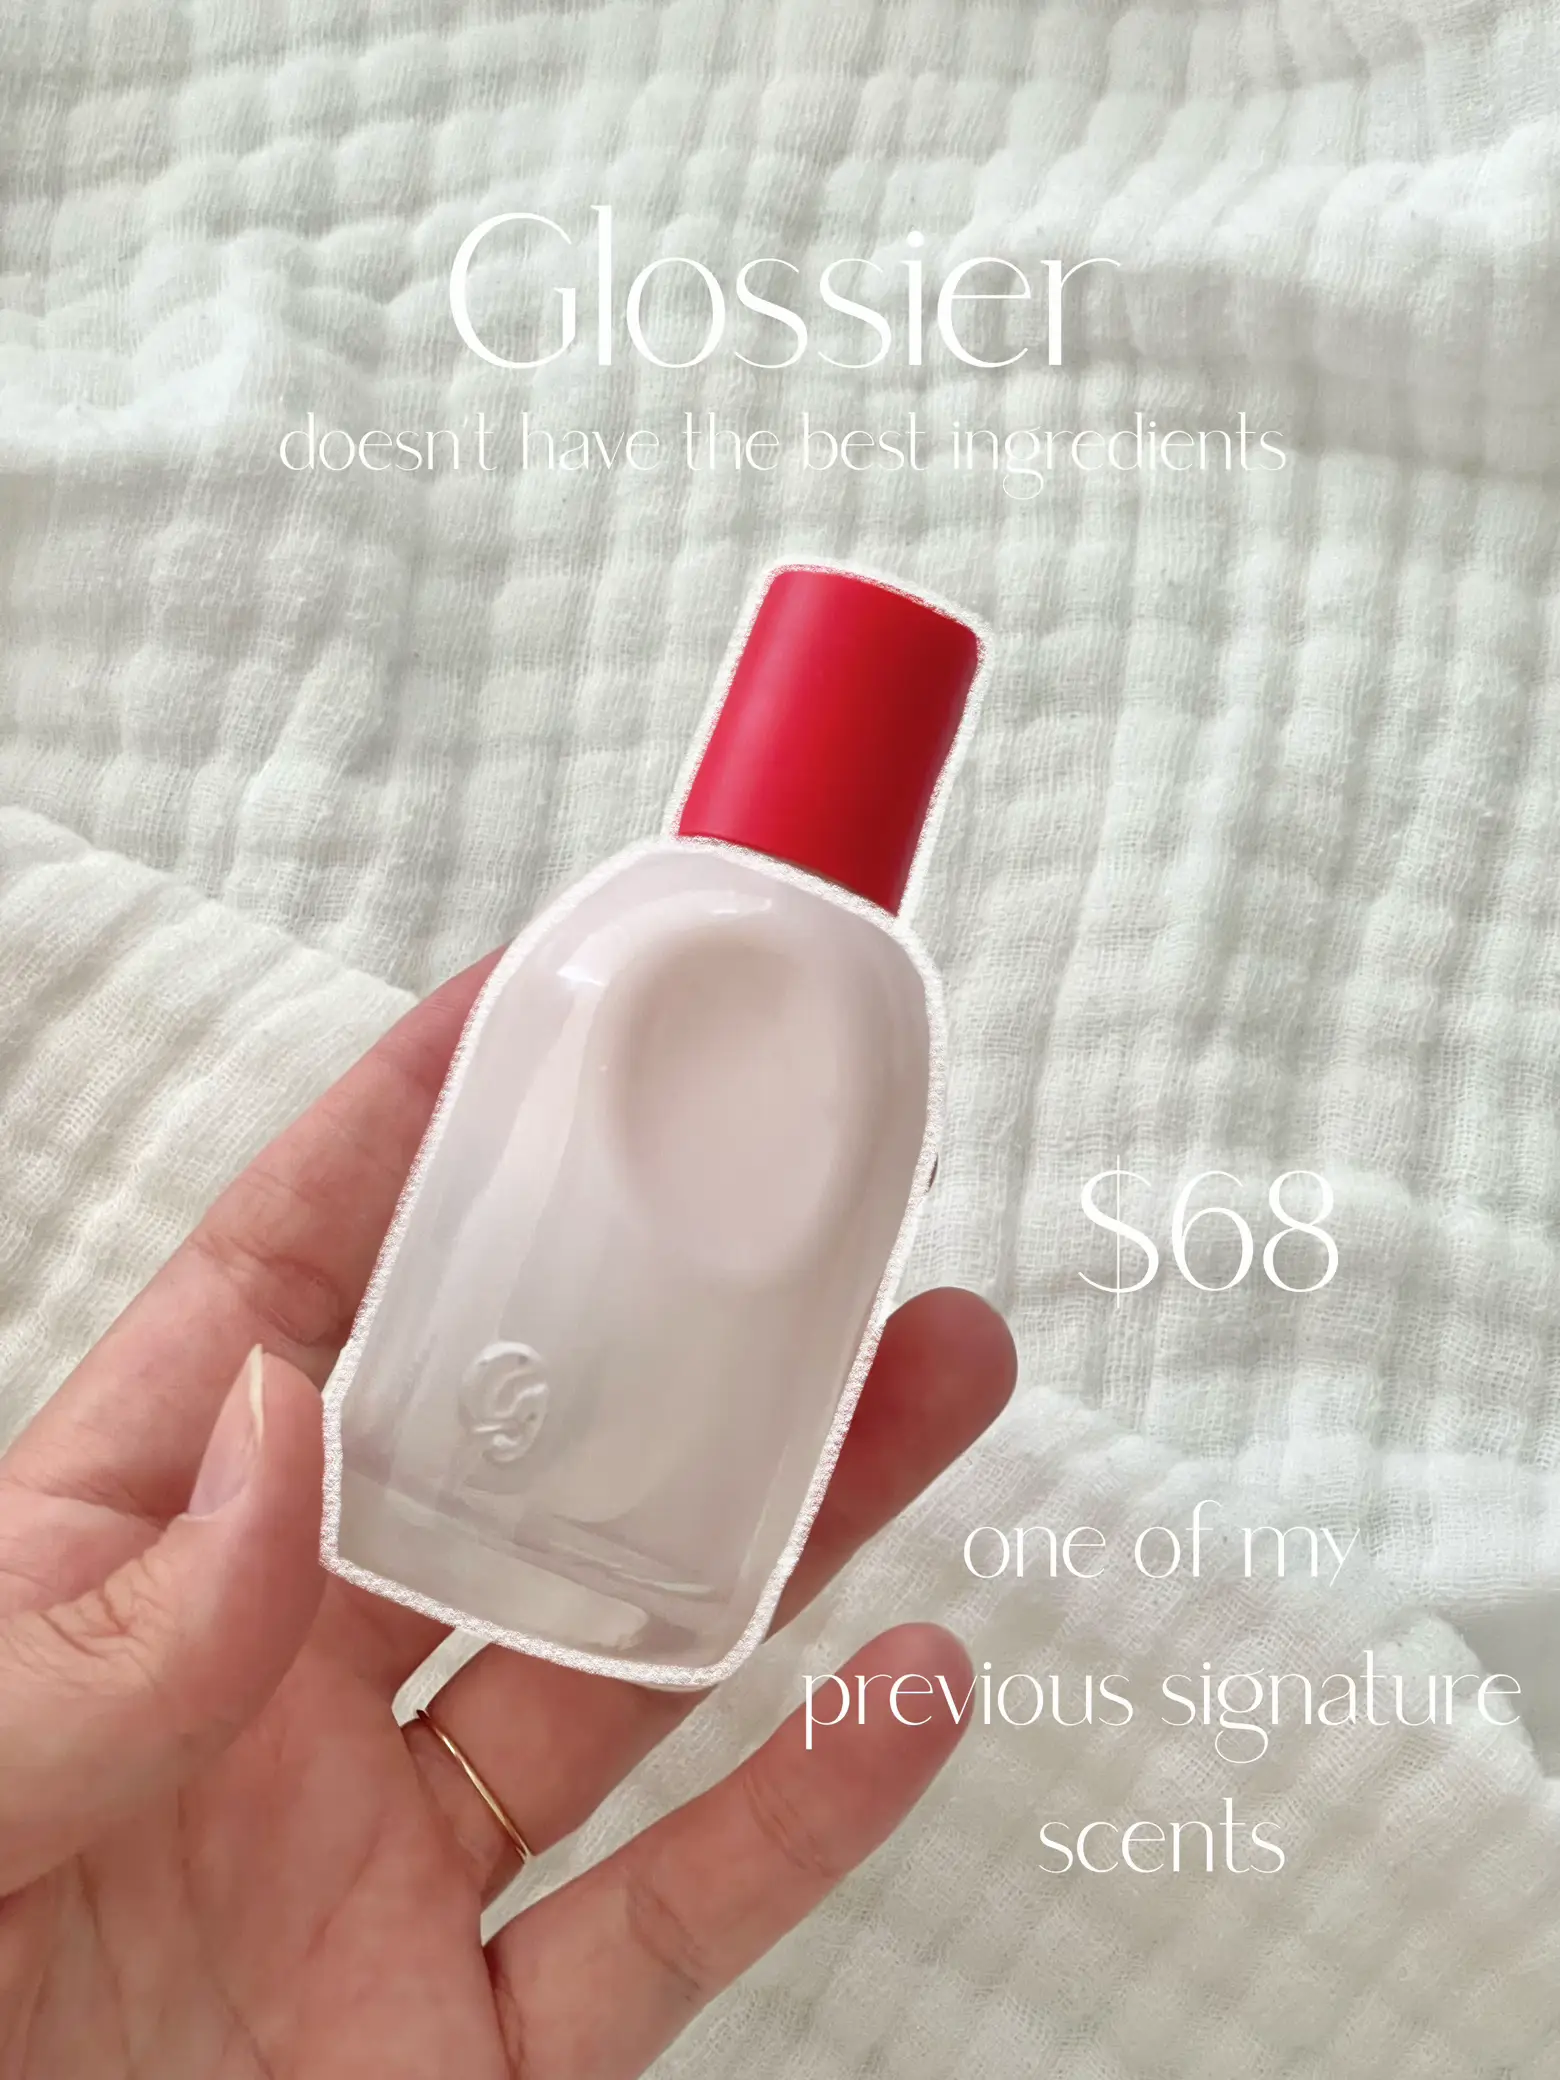 Perfume Tous Sensual Touch– Arome México